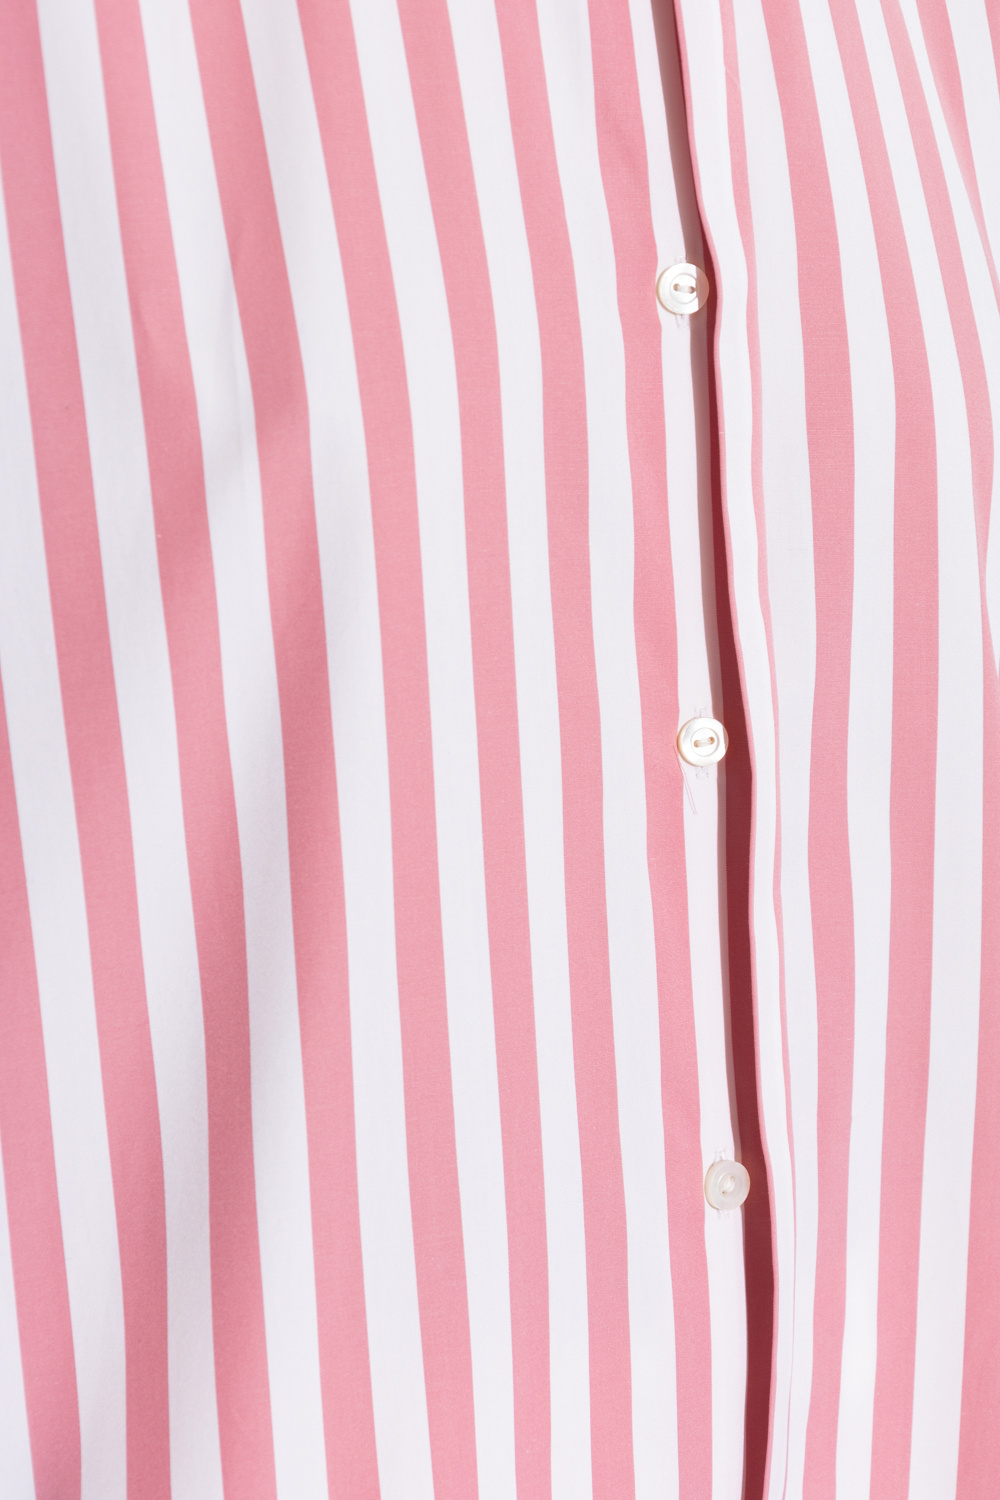 JIL SANDER Striped cotton shirt